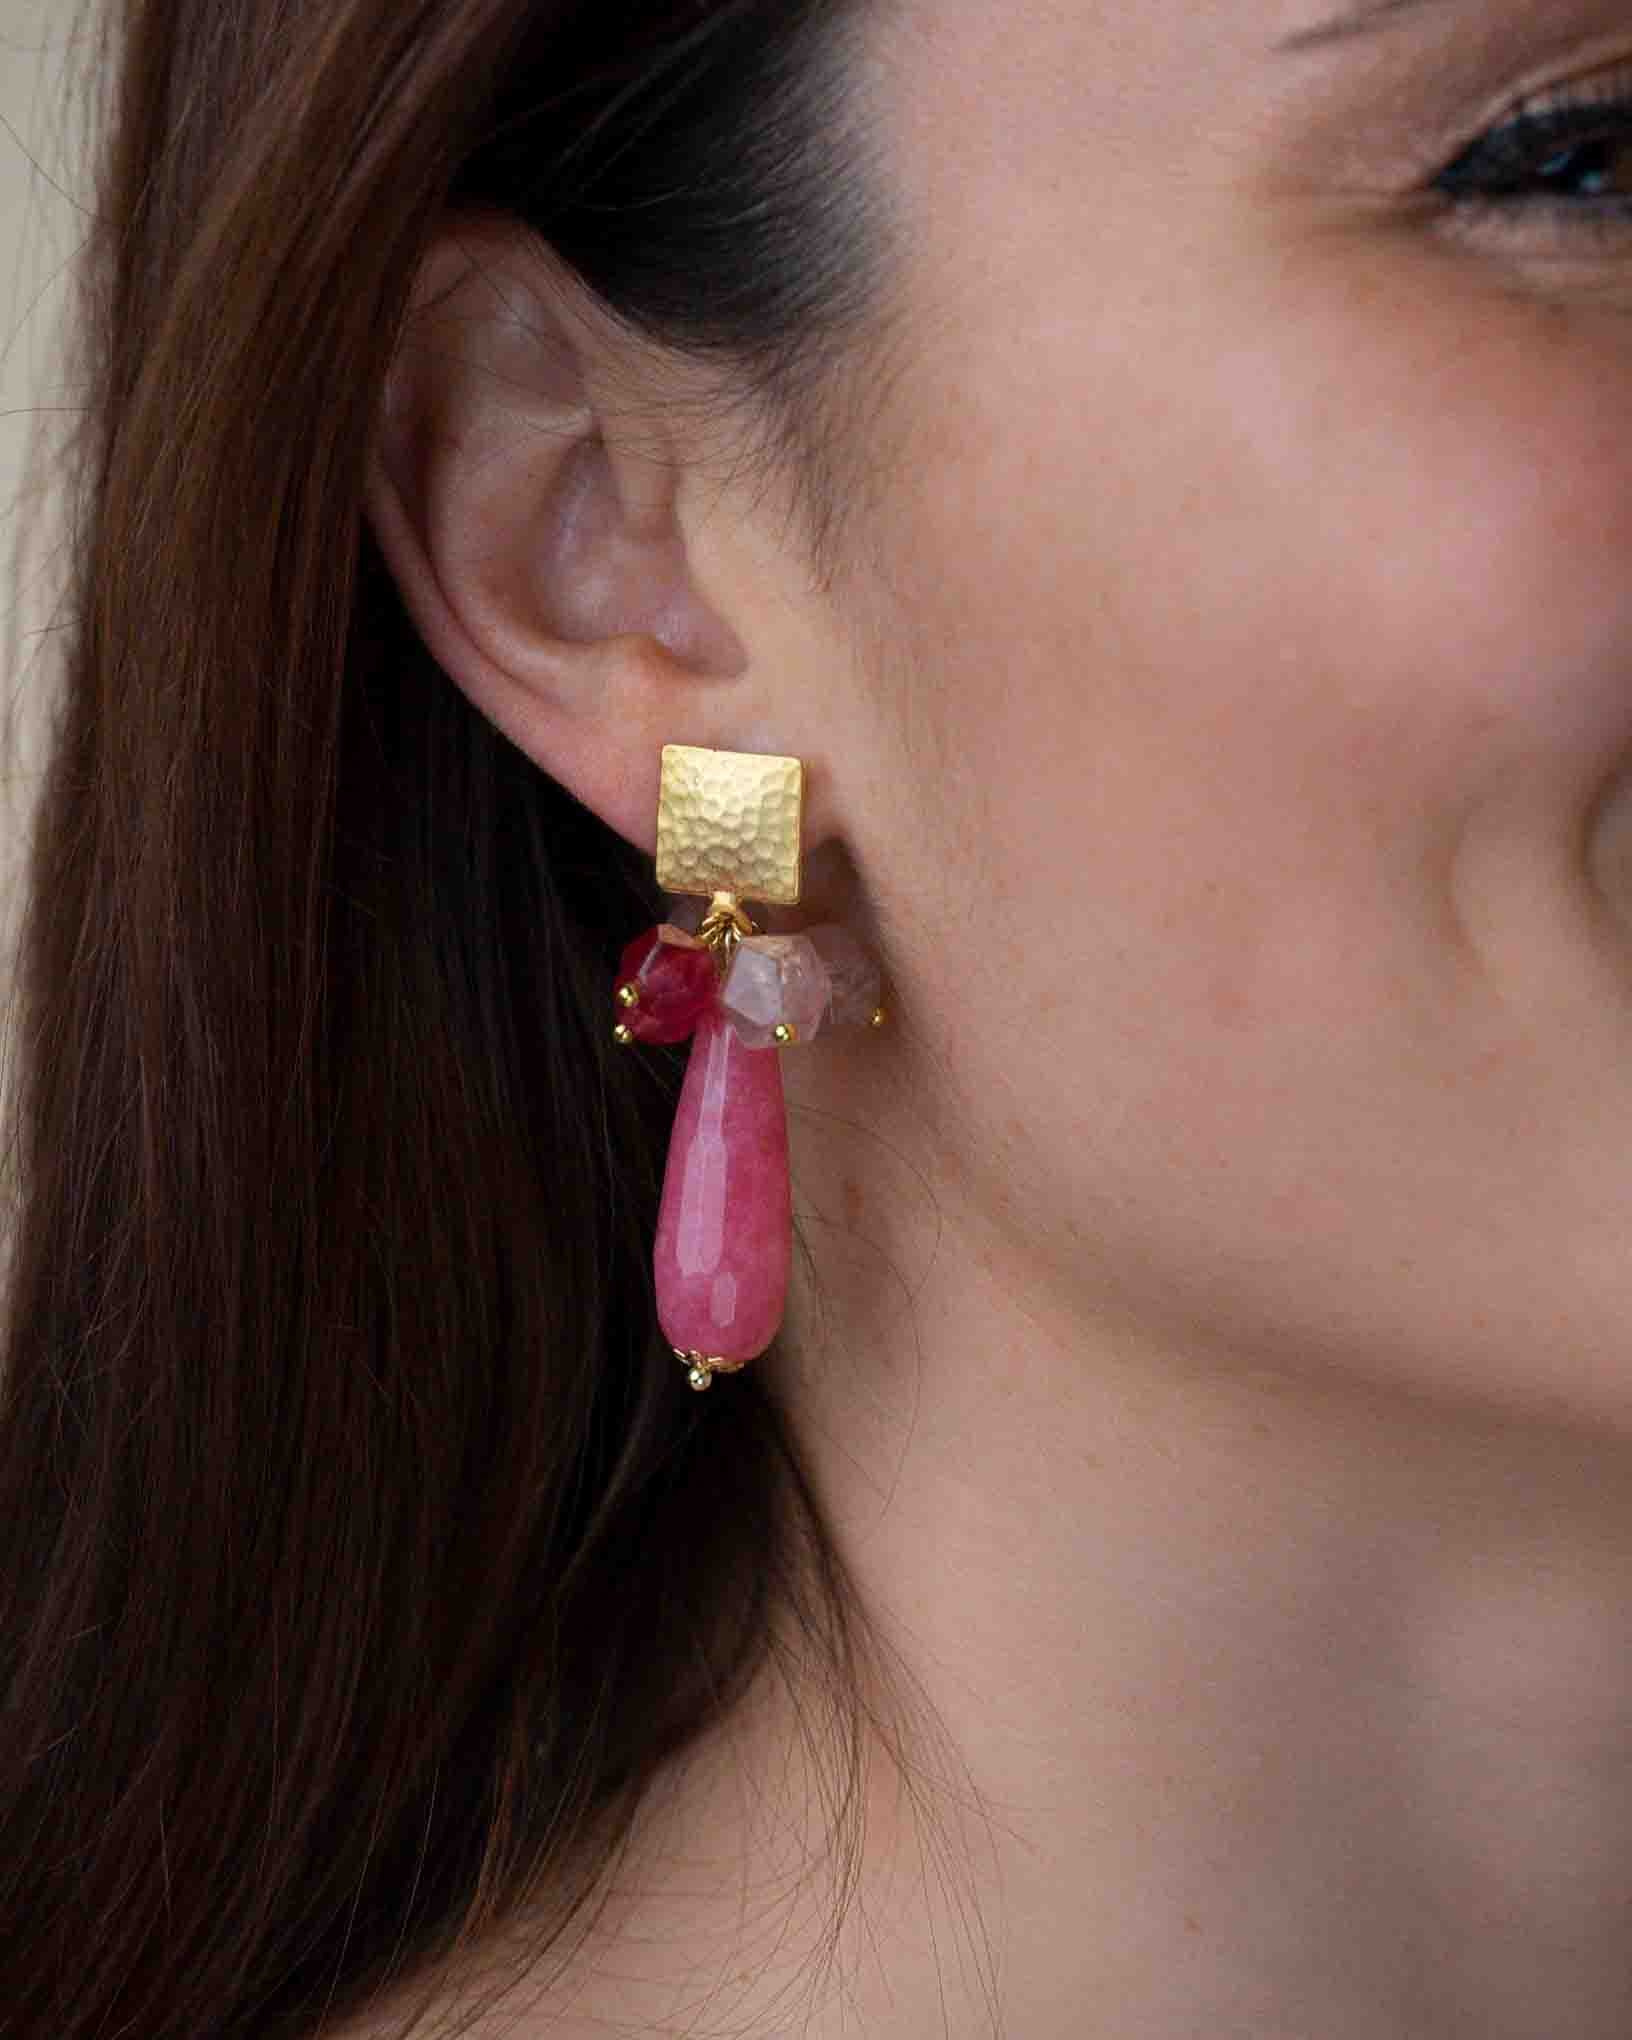 Ohrring Vino Rosso aus der Kollektion I Classici von Donna Rachele Jewelry